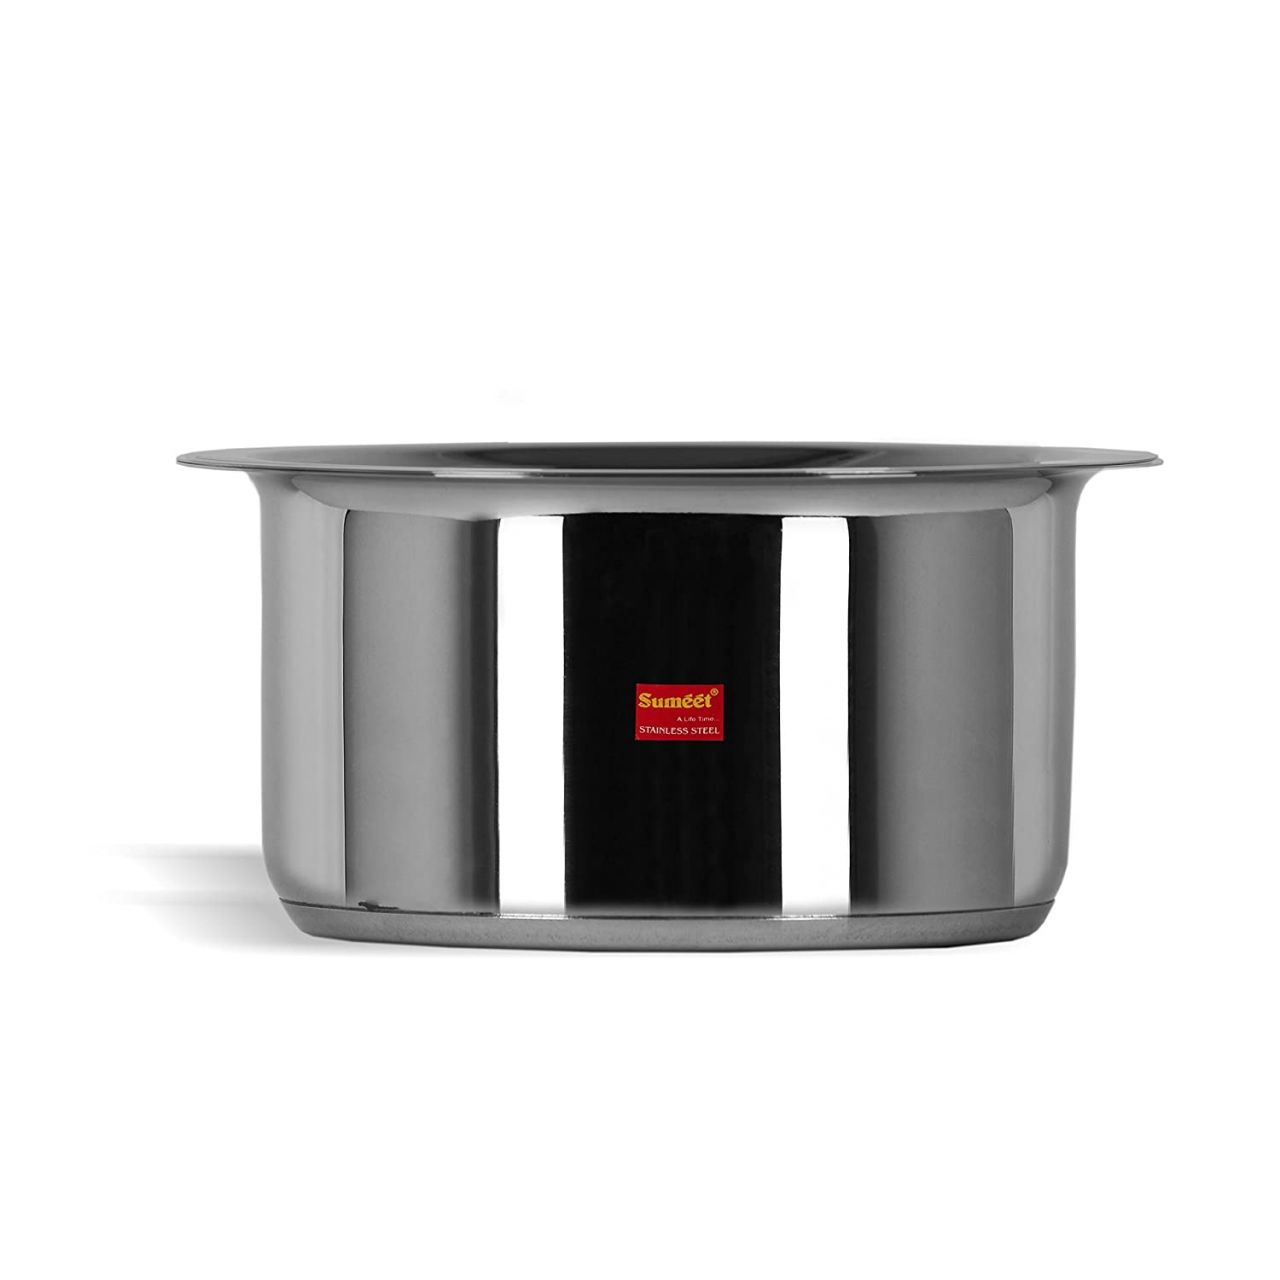 Sumeet Stainless Steel Cookware Set, 1 L, 1 Tope, 1 Lid (Steel)